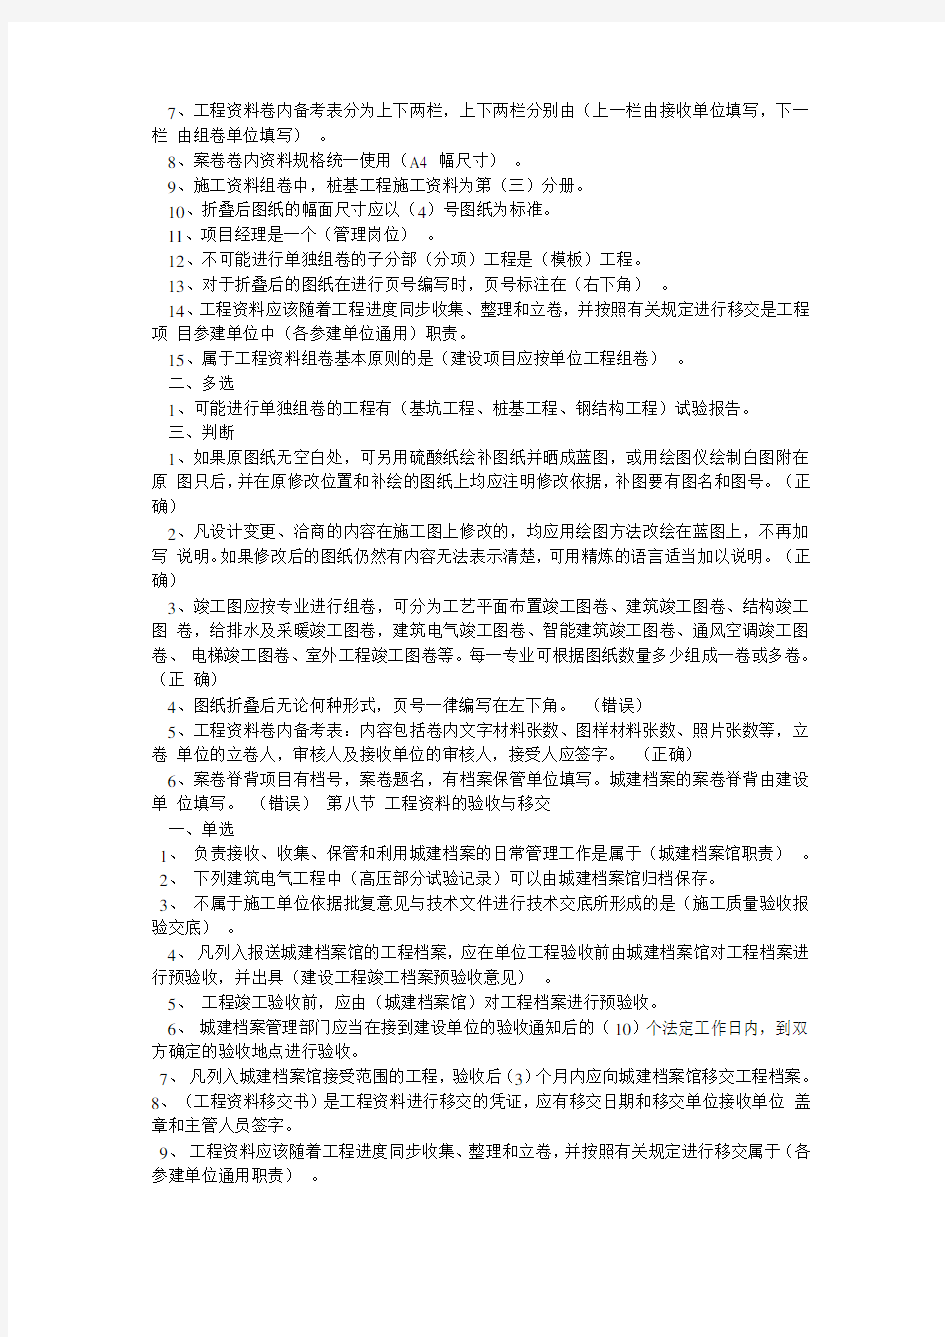 江苏省资料员考试习题集及答案第6-10节教学内容